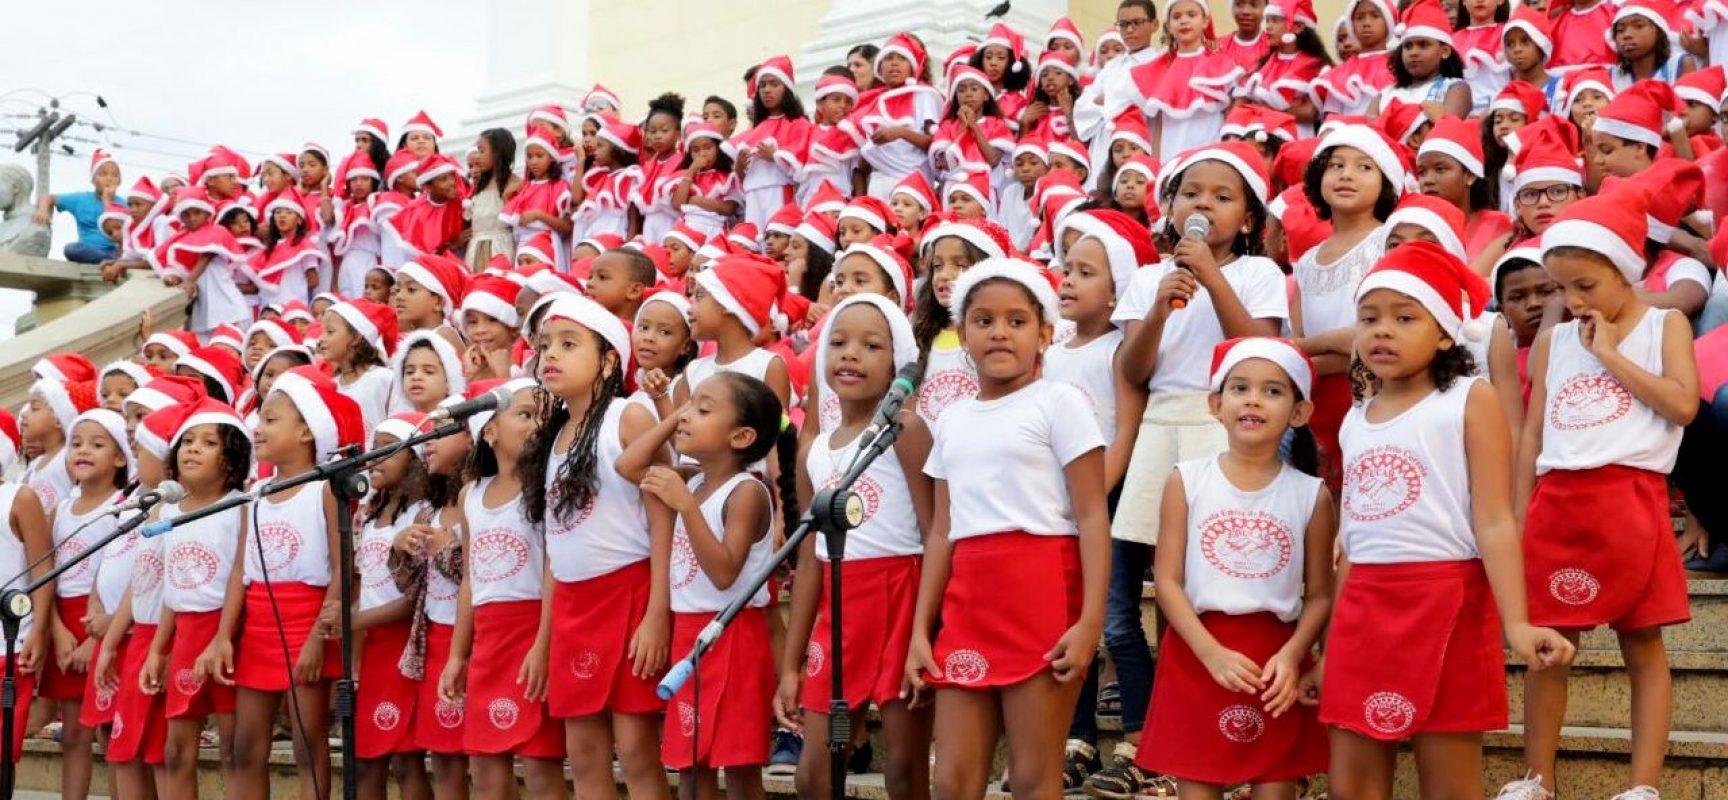 Cantata de Natal terá apresentação de corais nas escadarias do Palácio Paranaguá